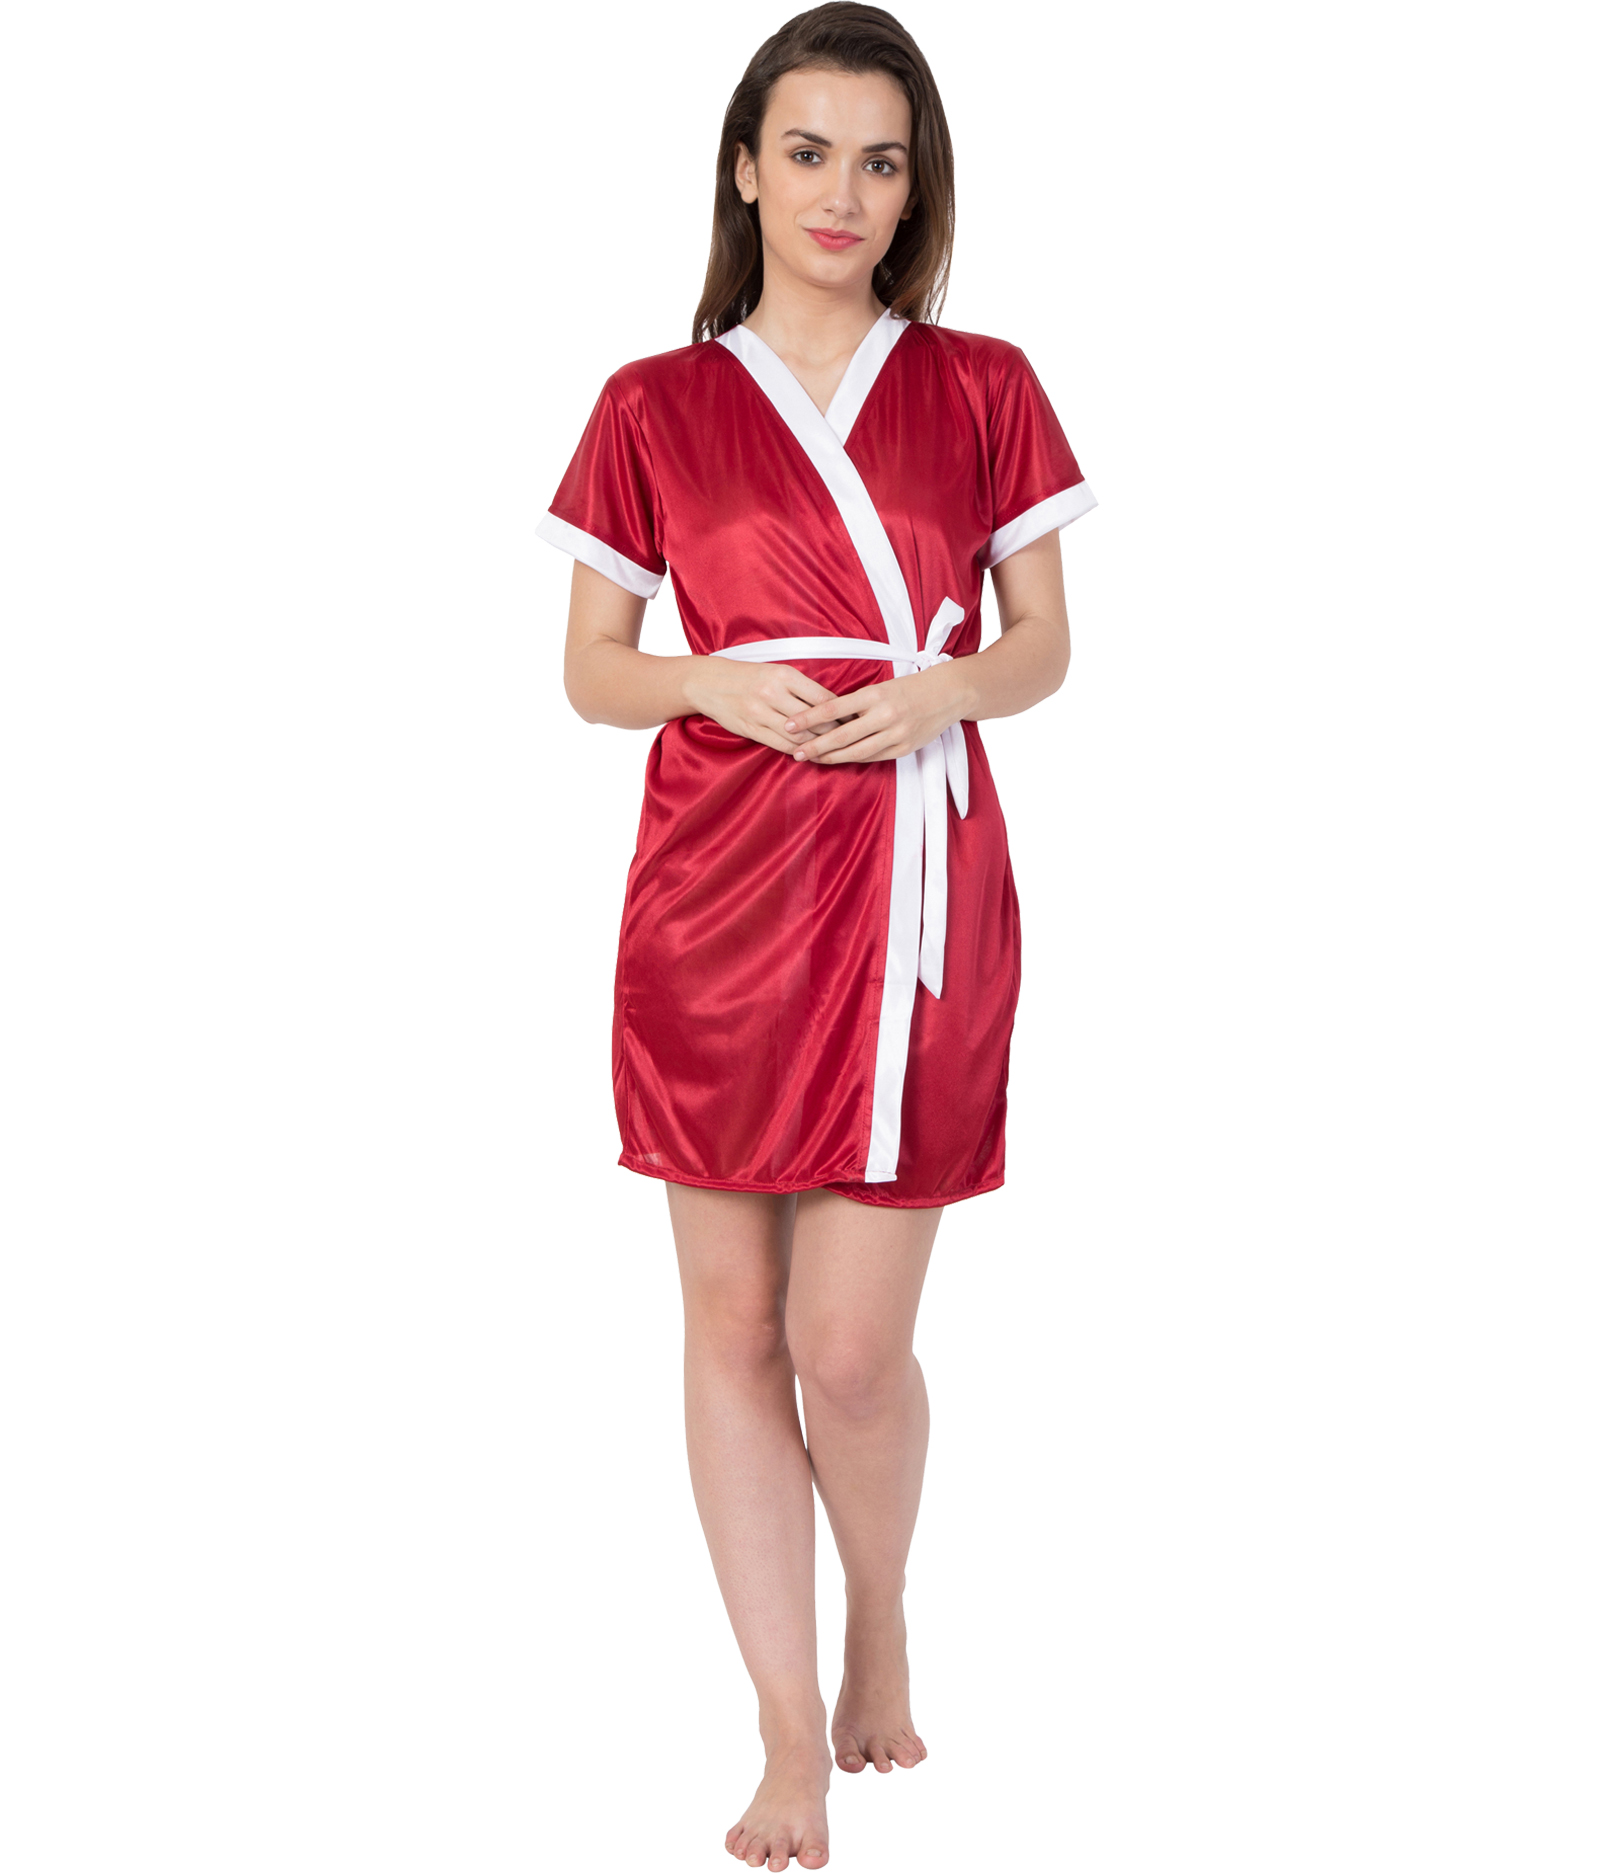 American-Elm Hot Women robe Satin Nighty Nightwear for Women ...